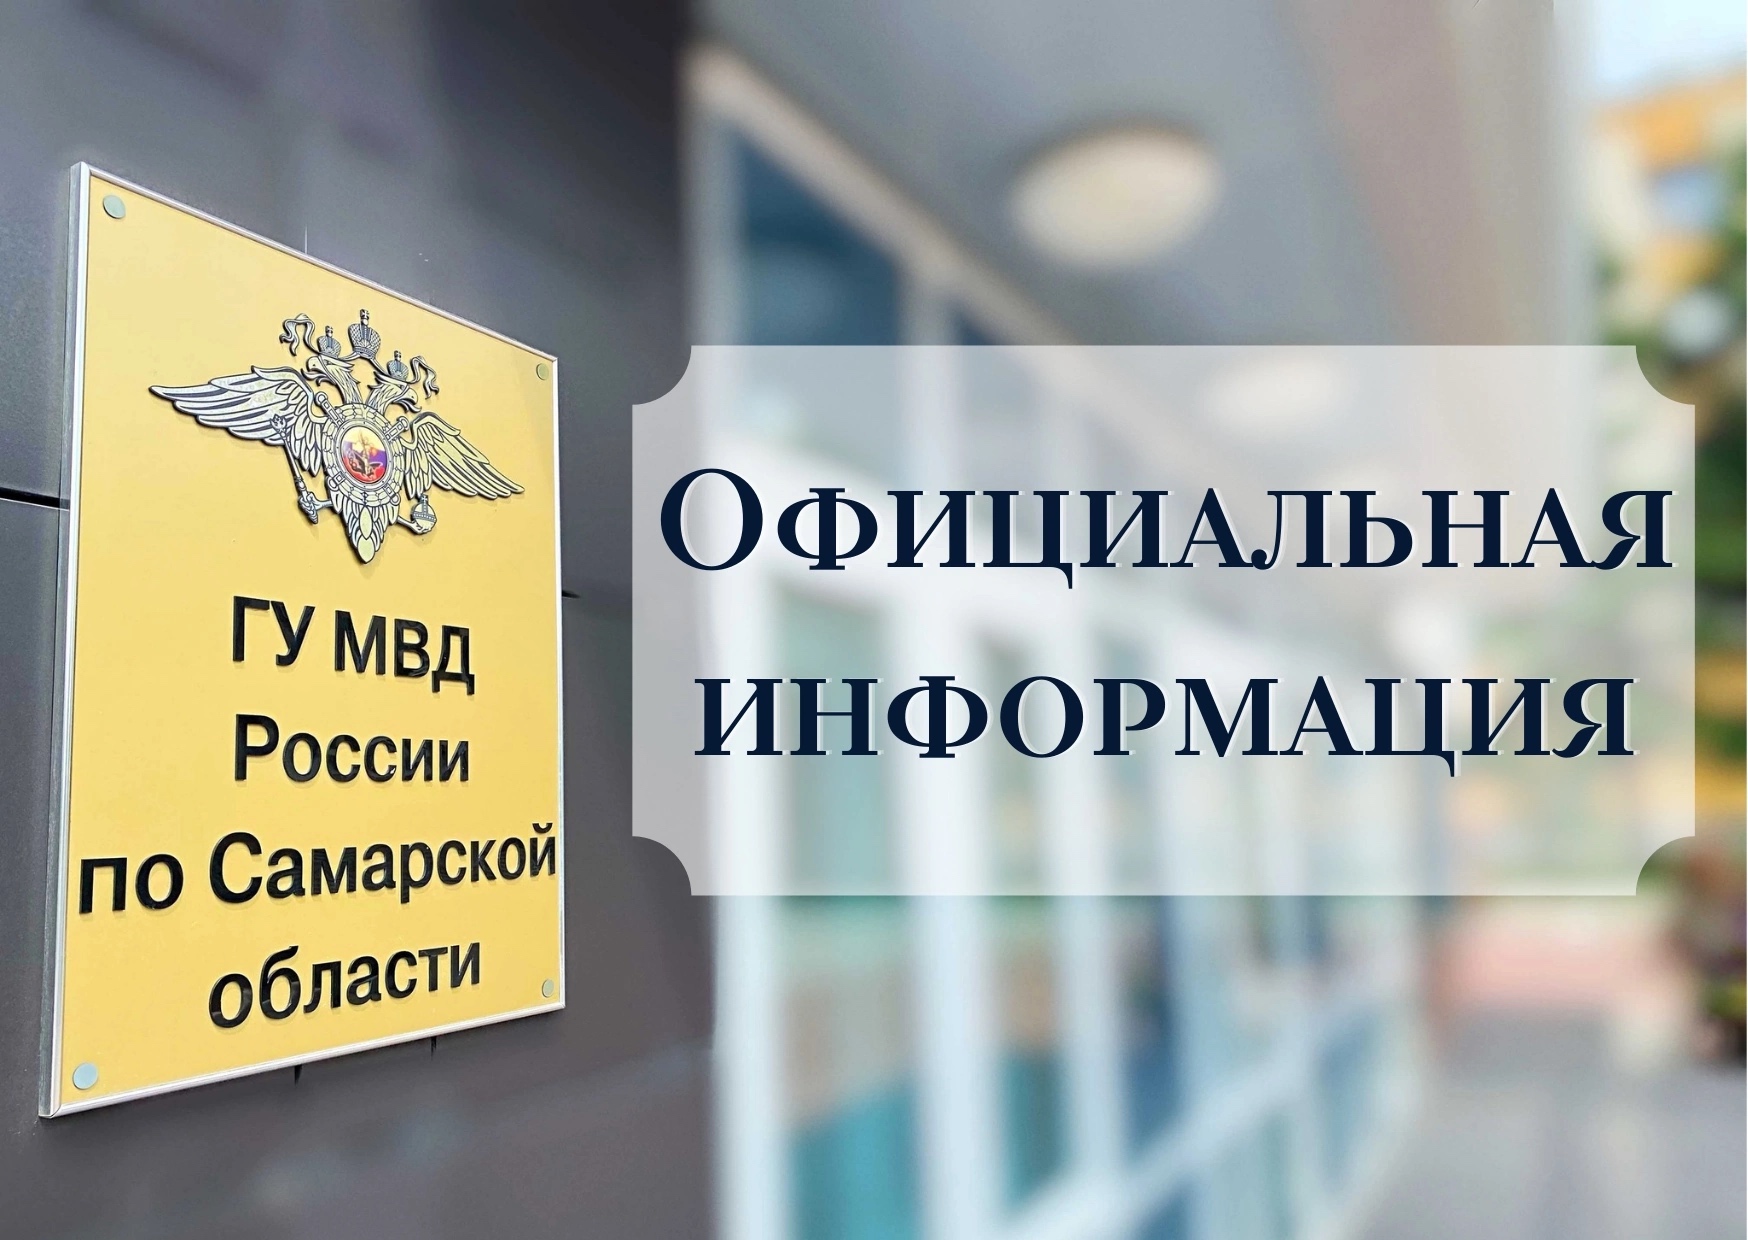 Двое жителей Самары оштрафованы за дискредитацию Вооруженных сил РФ